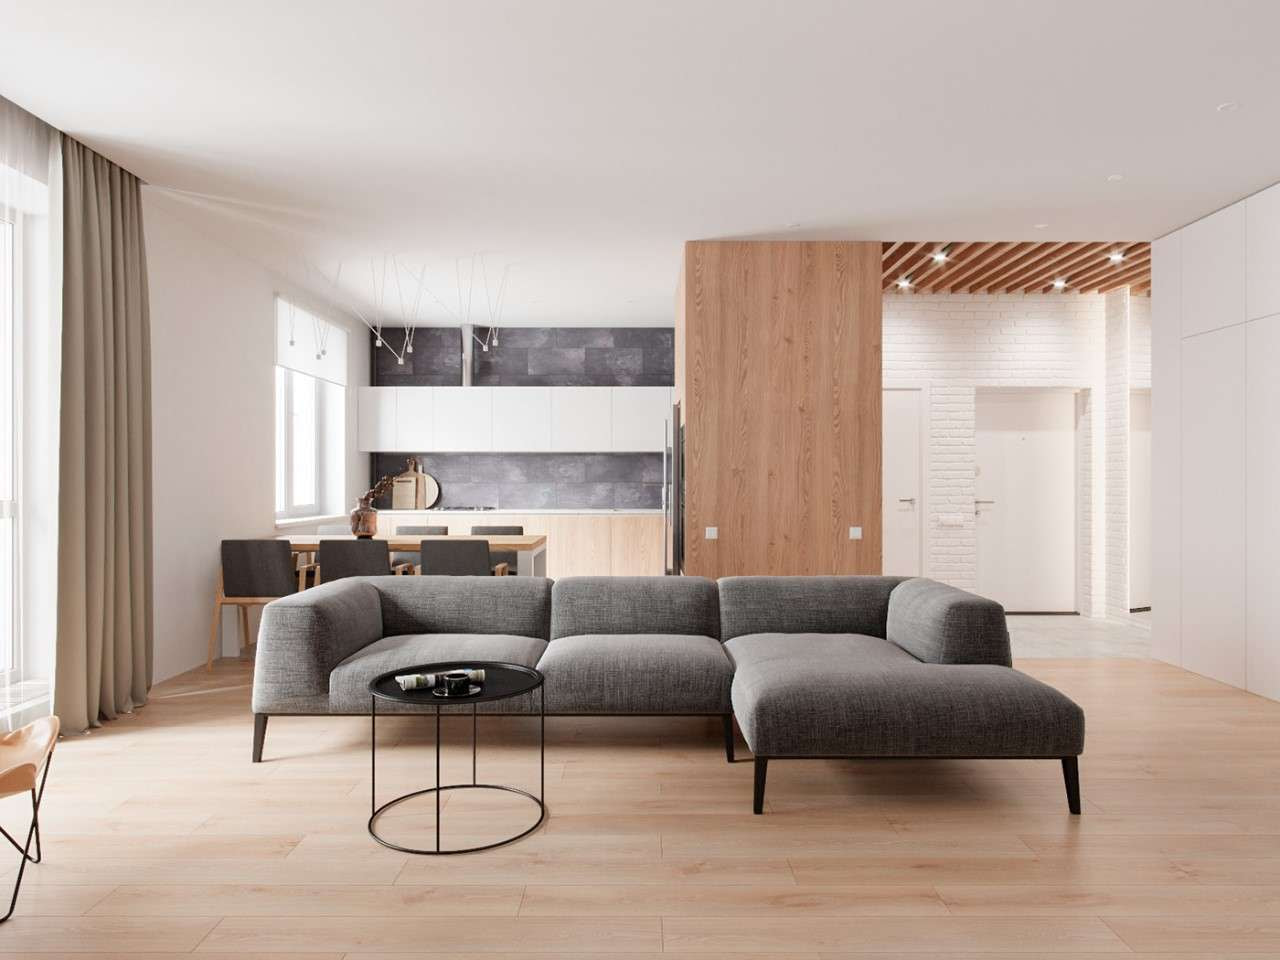 Bộ ghế sofa đơn giản làm vật trung tâm cho phòng khách căn hộ